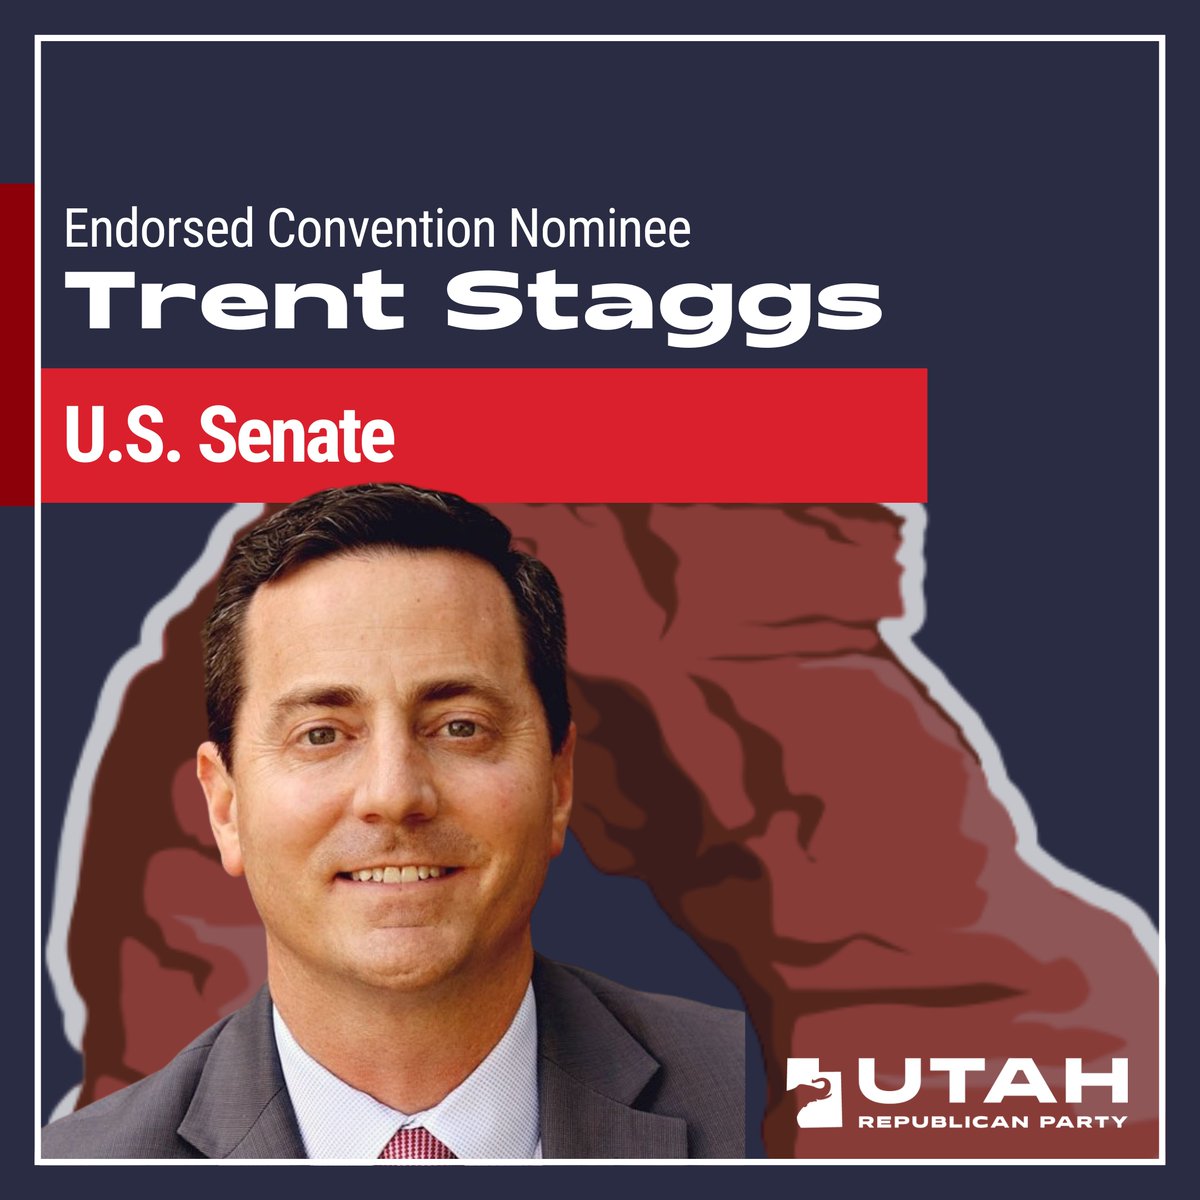 Trent Staggs is the UT GOP's Endorsed Convention Nominee for the U.S. Senate! Congratulations Trent! #utpol #utgop